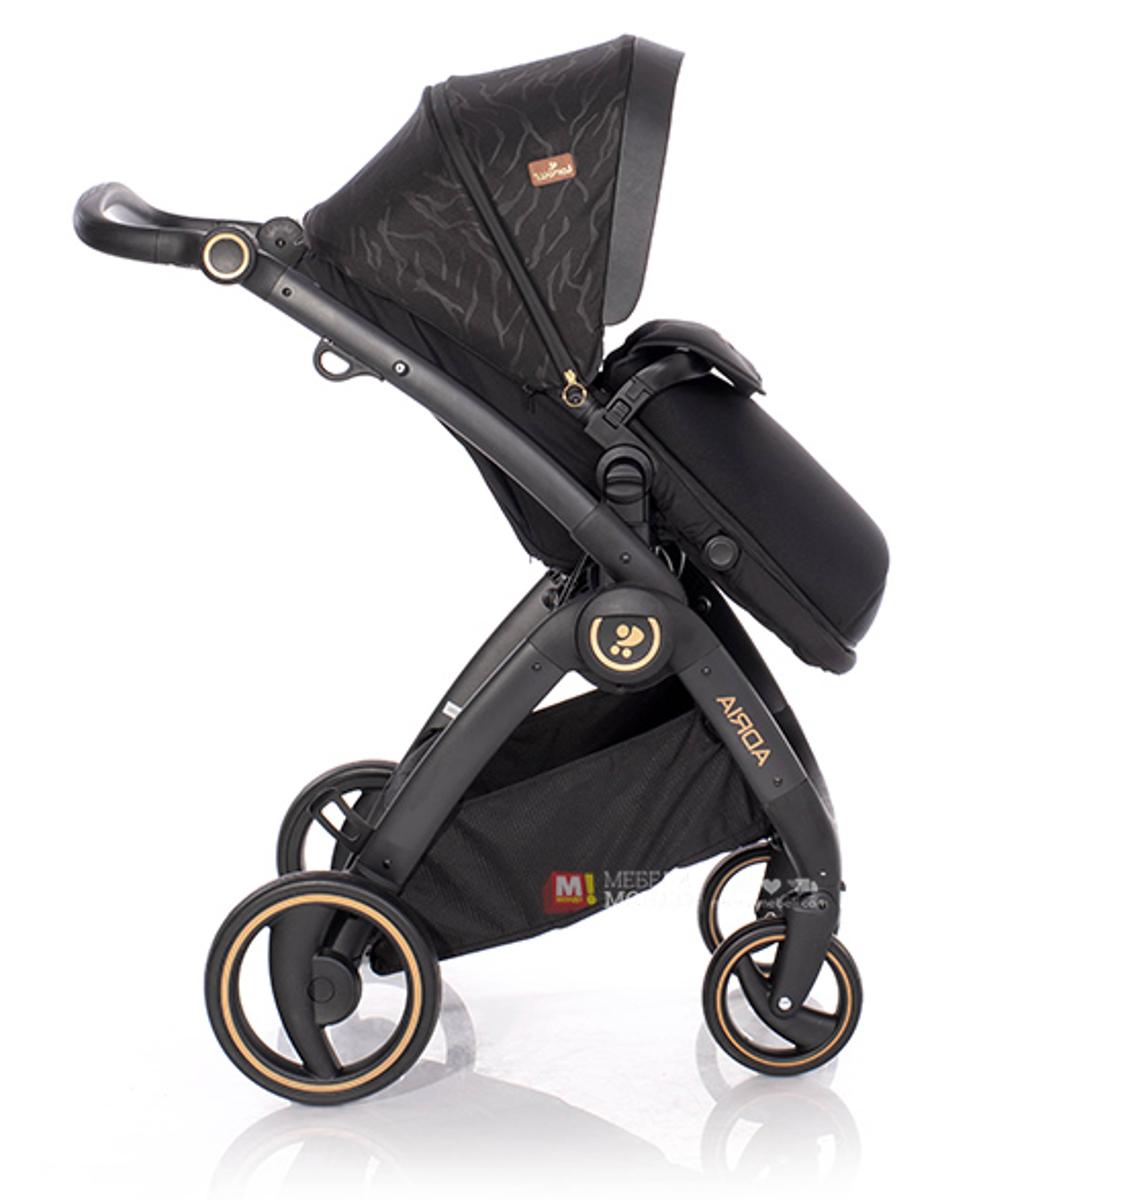 Бебешка количка ADRIA черна, комбинирана